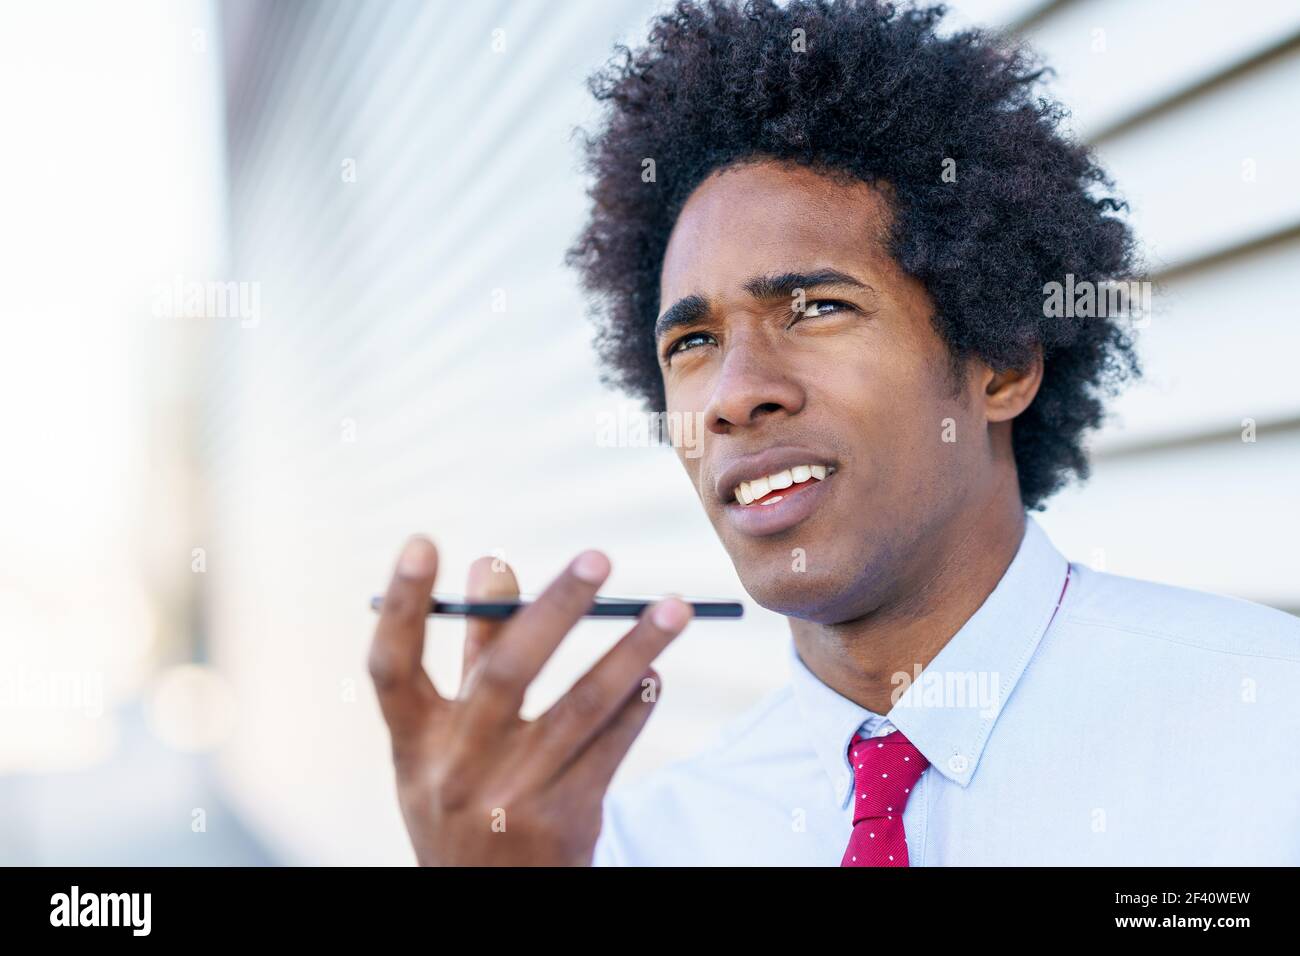 Homme d'affaires noir envoyant une note vocale avec son smartphone près d'un immeuble de bureaux. Homme avec cheveux afro.. Homme d'affaires noir utilisant un smartphone près d'un immeuble de bureaux Banque D'Images